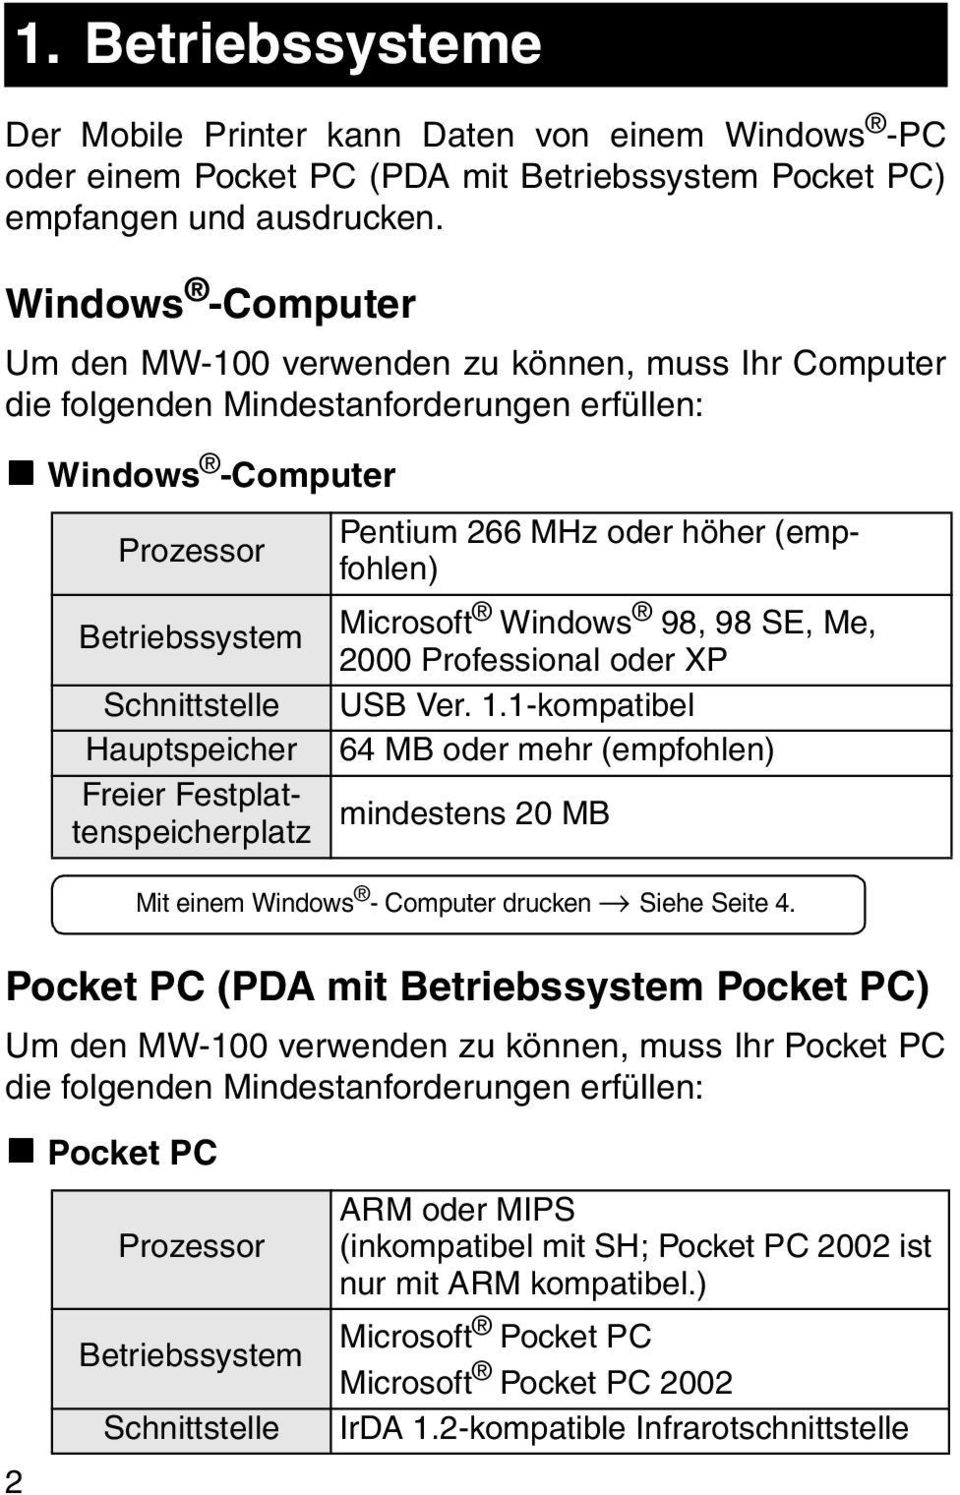 verwenden zu können, muss Ihr Pocket PC die folgenden Mindestanforderungen erfüllen: " Pocket PC 2 Prozessor Betriebssystem Schnittstelle Hauptspeicher Freier Festplattenspeicherplatz Prozessor